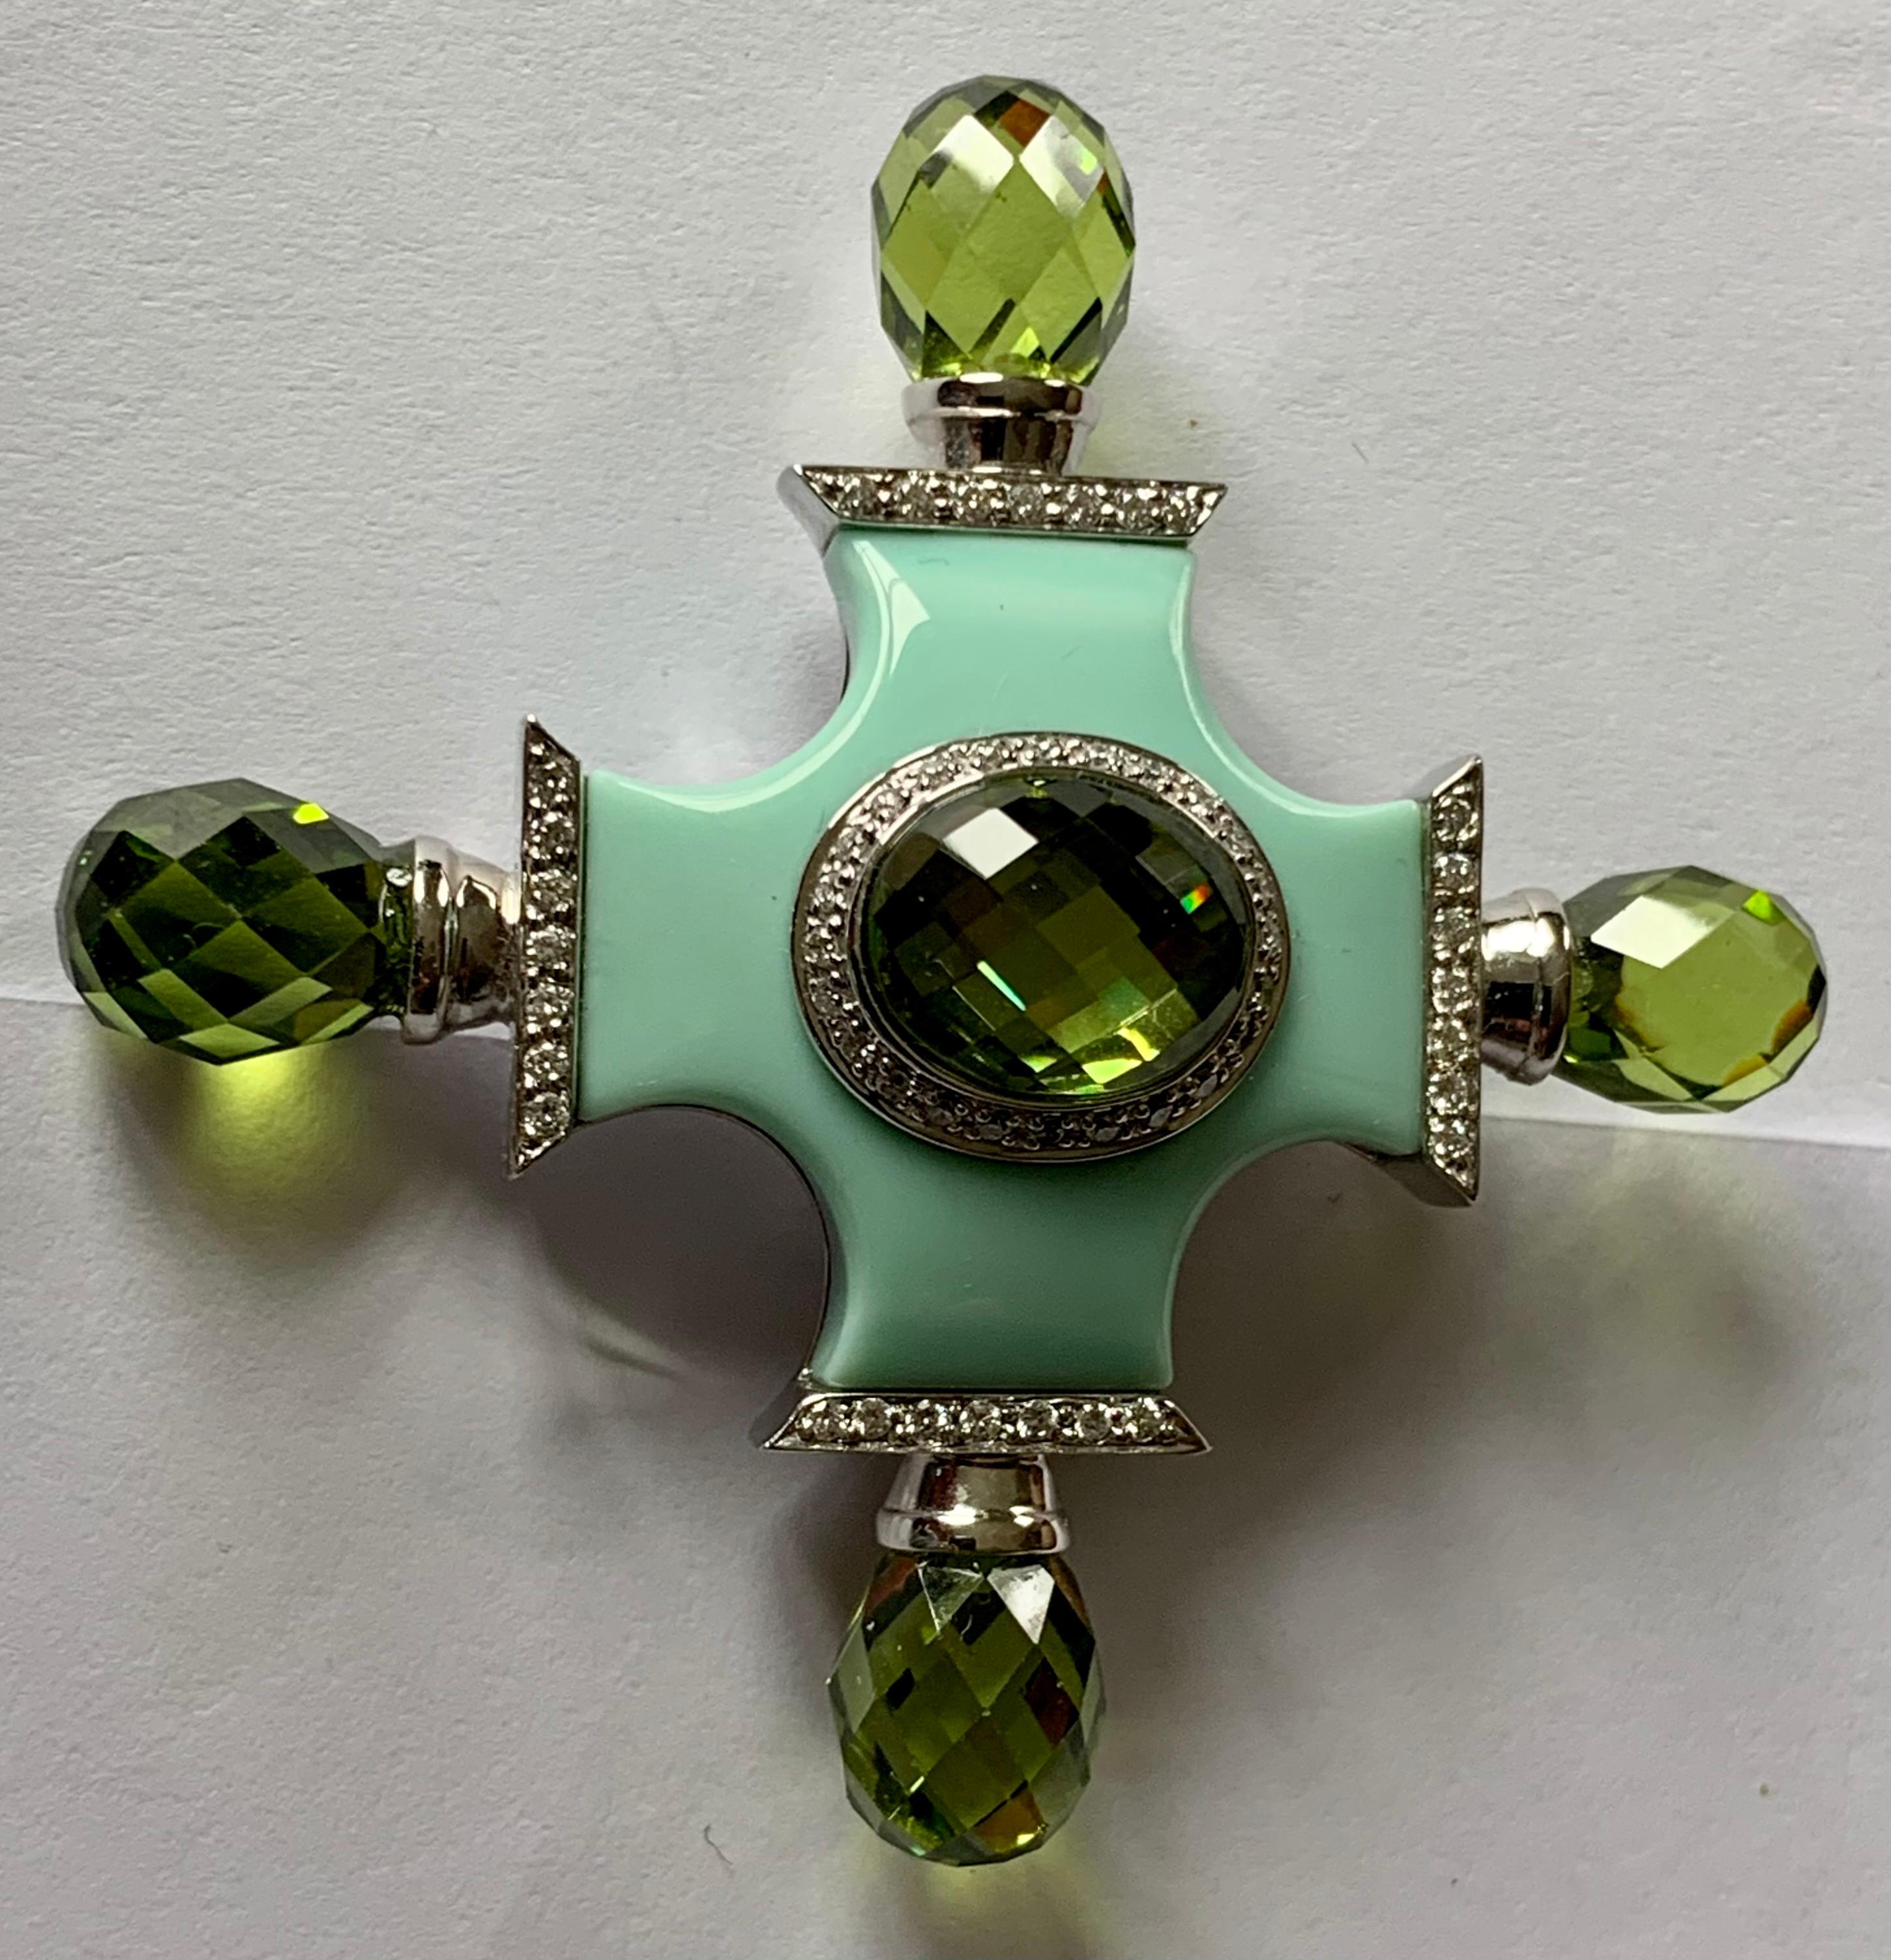 Pendentif/broche en or blanc 18 carats et diamants en forme de croix de Malte. La partie principale de la broche/du pendentif est un corps en céramique de couleur turquoise clair. La pièce est sertie de diamants pesant 0,42 ct et de quartz vert en